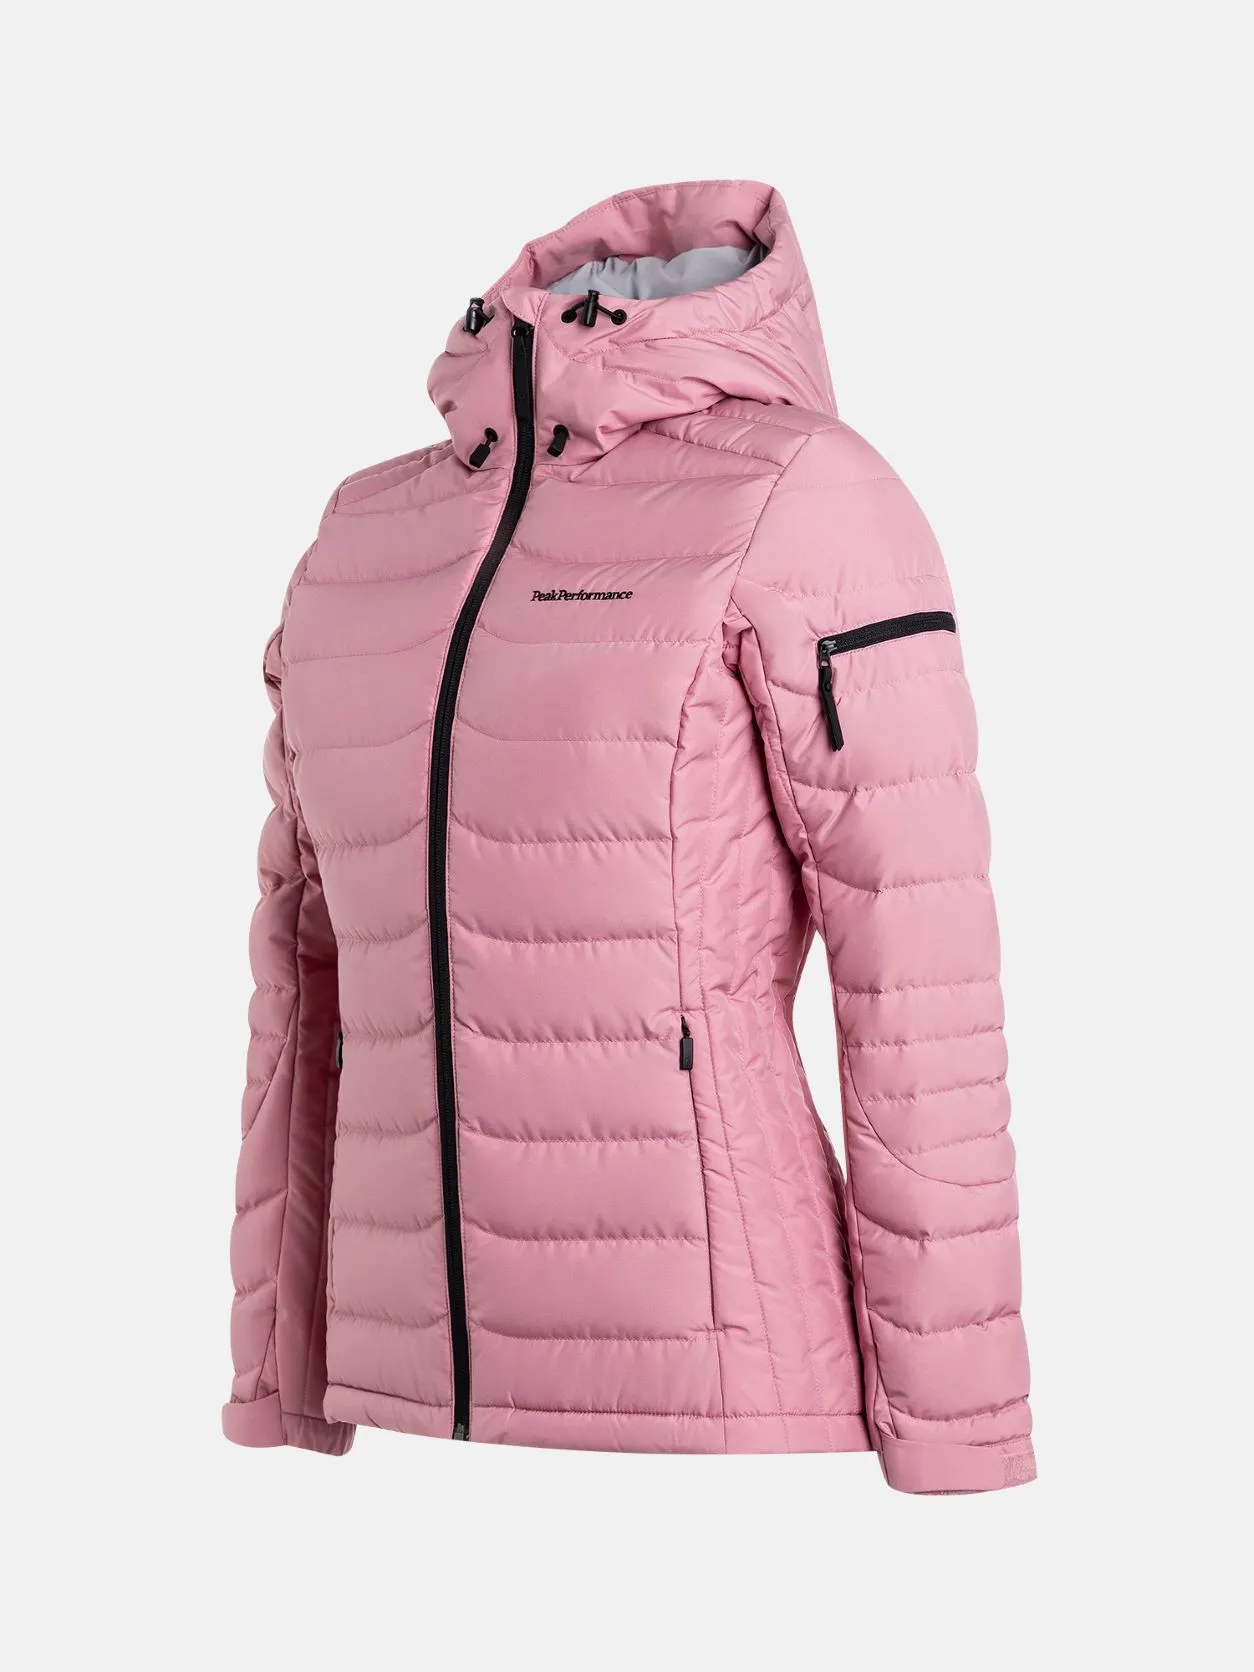 ondergronds ongezond vrouw Peak Performance W Down ski jas dames roze van winterjassen